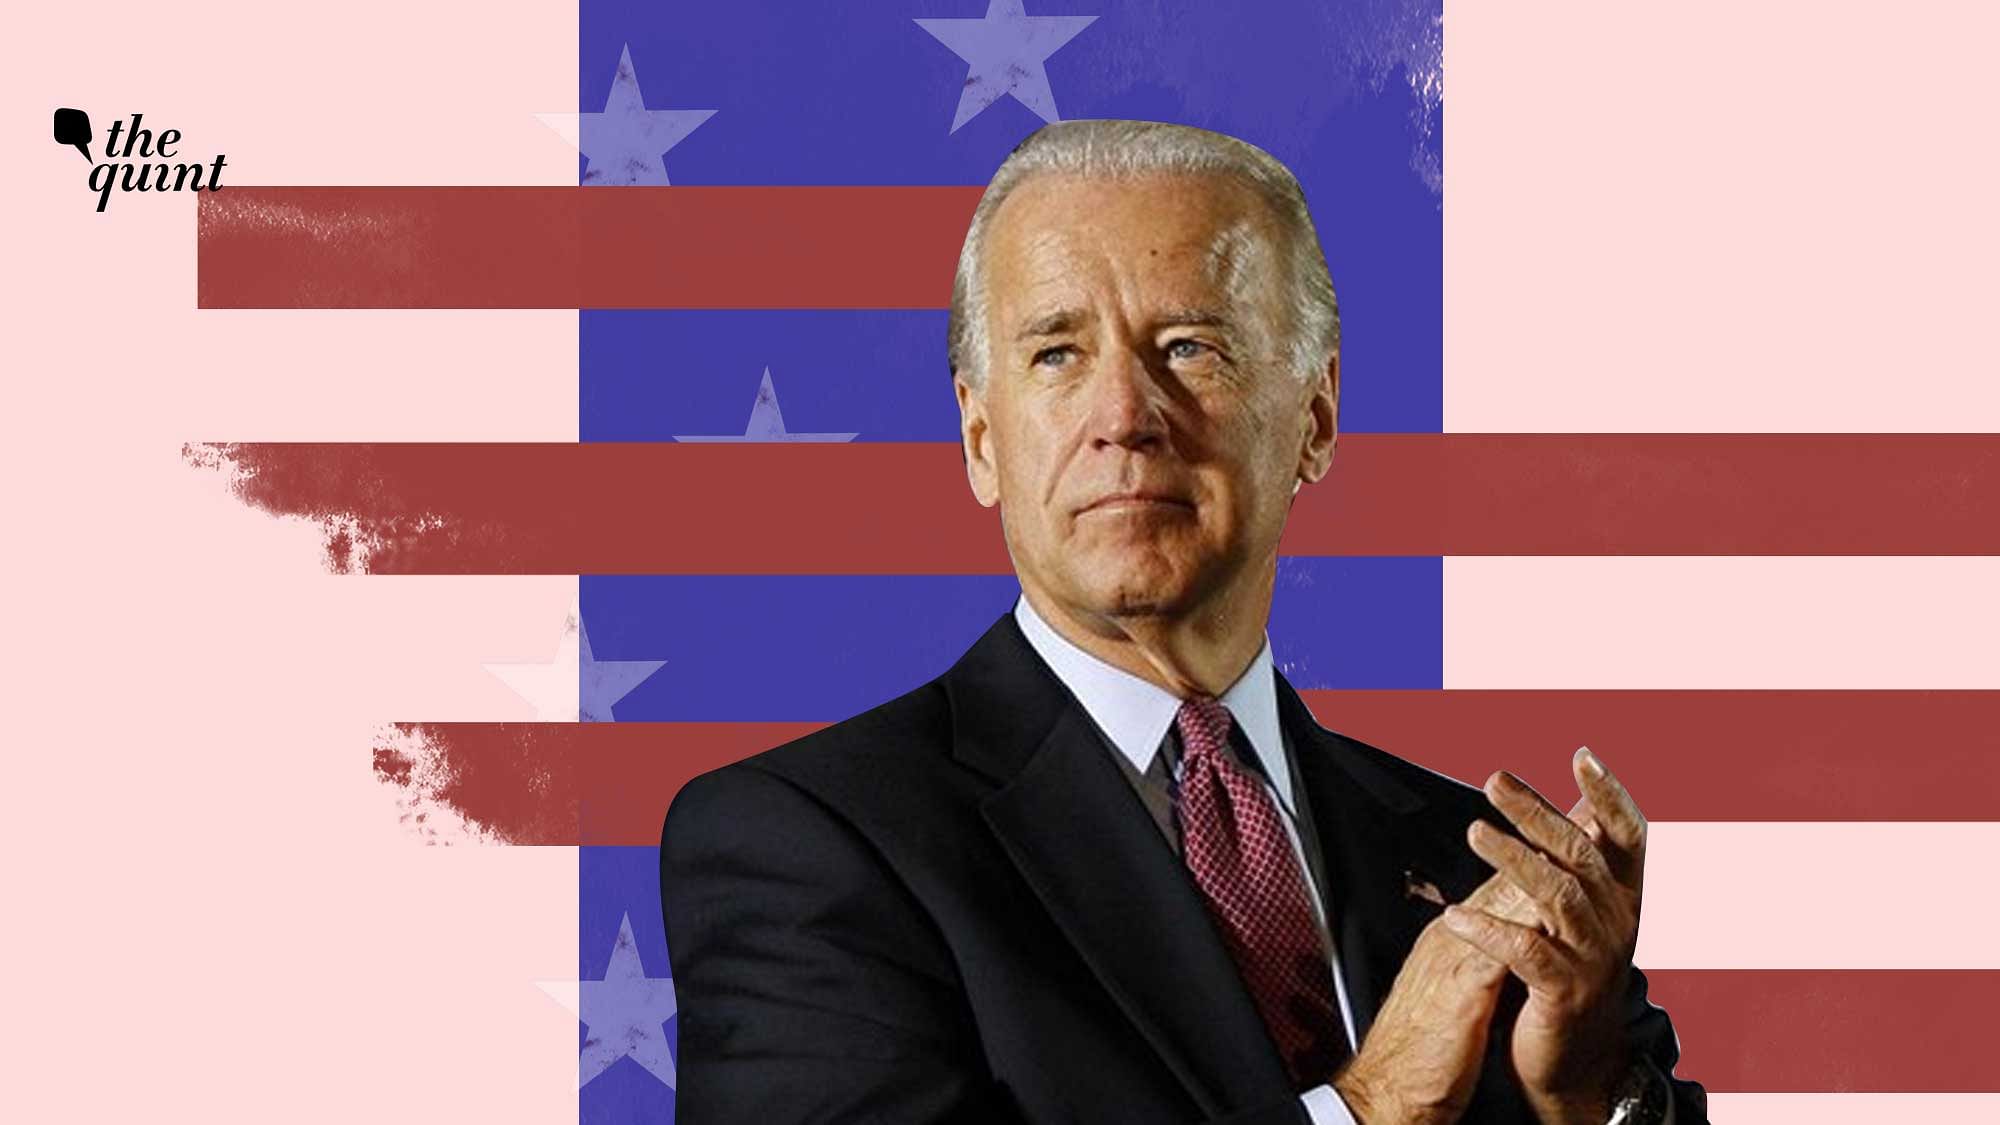 Joe Biden is the 46th US President.